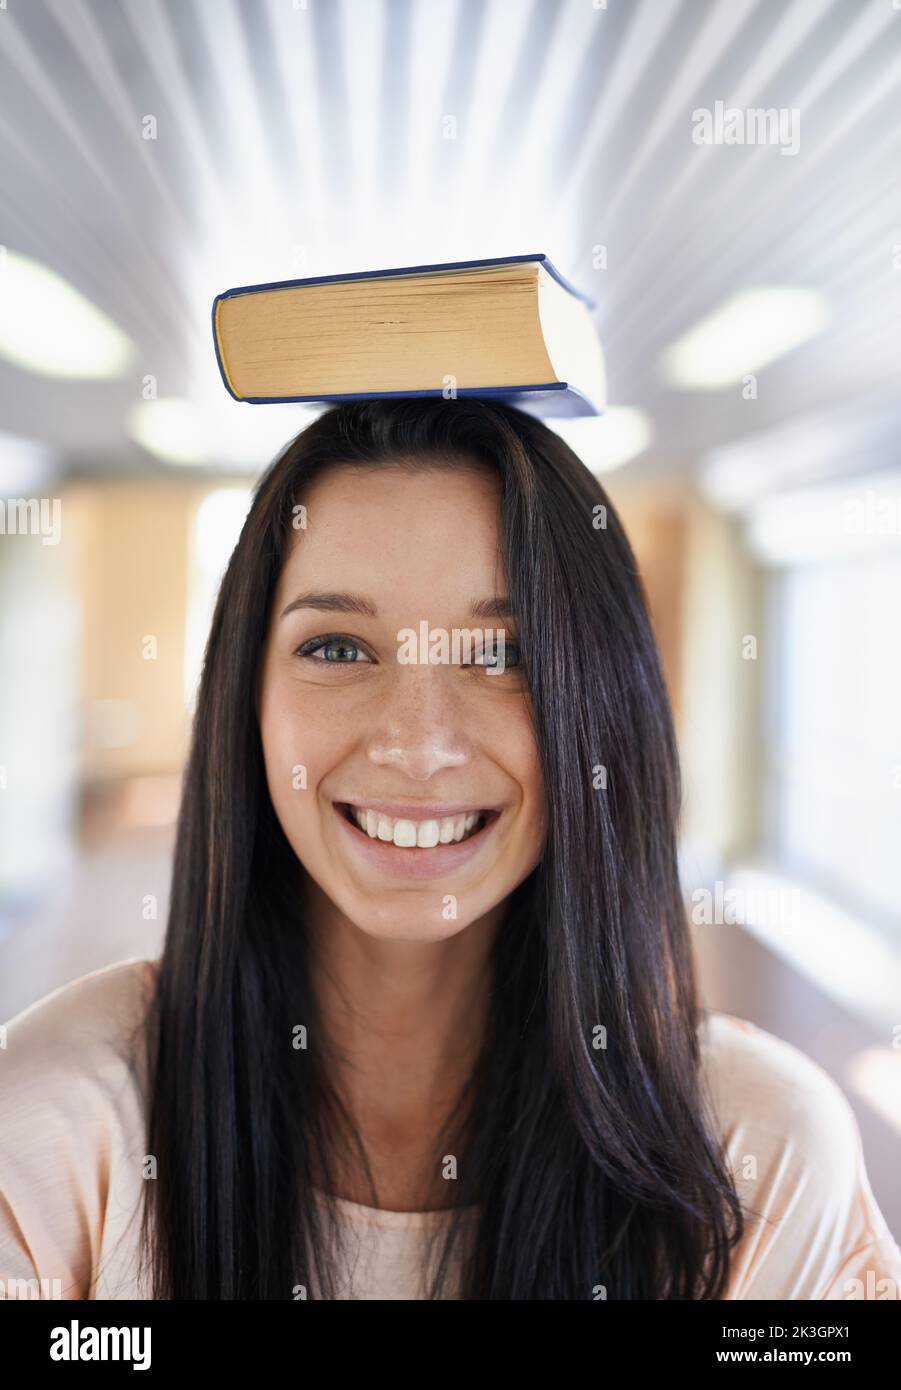 Shes est enthousiaste à l'idée d'apprendre. Portrait d'une jeune étudiante attrayante en équilibrant un livre sur sa tête. Banque D'Images